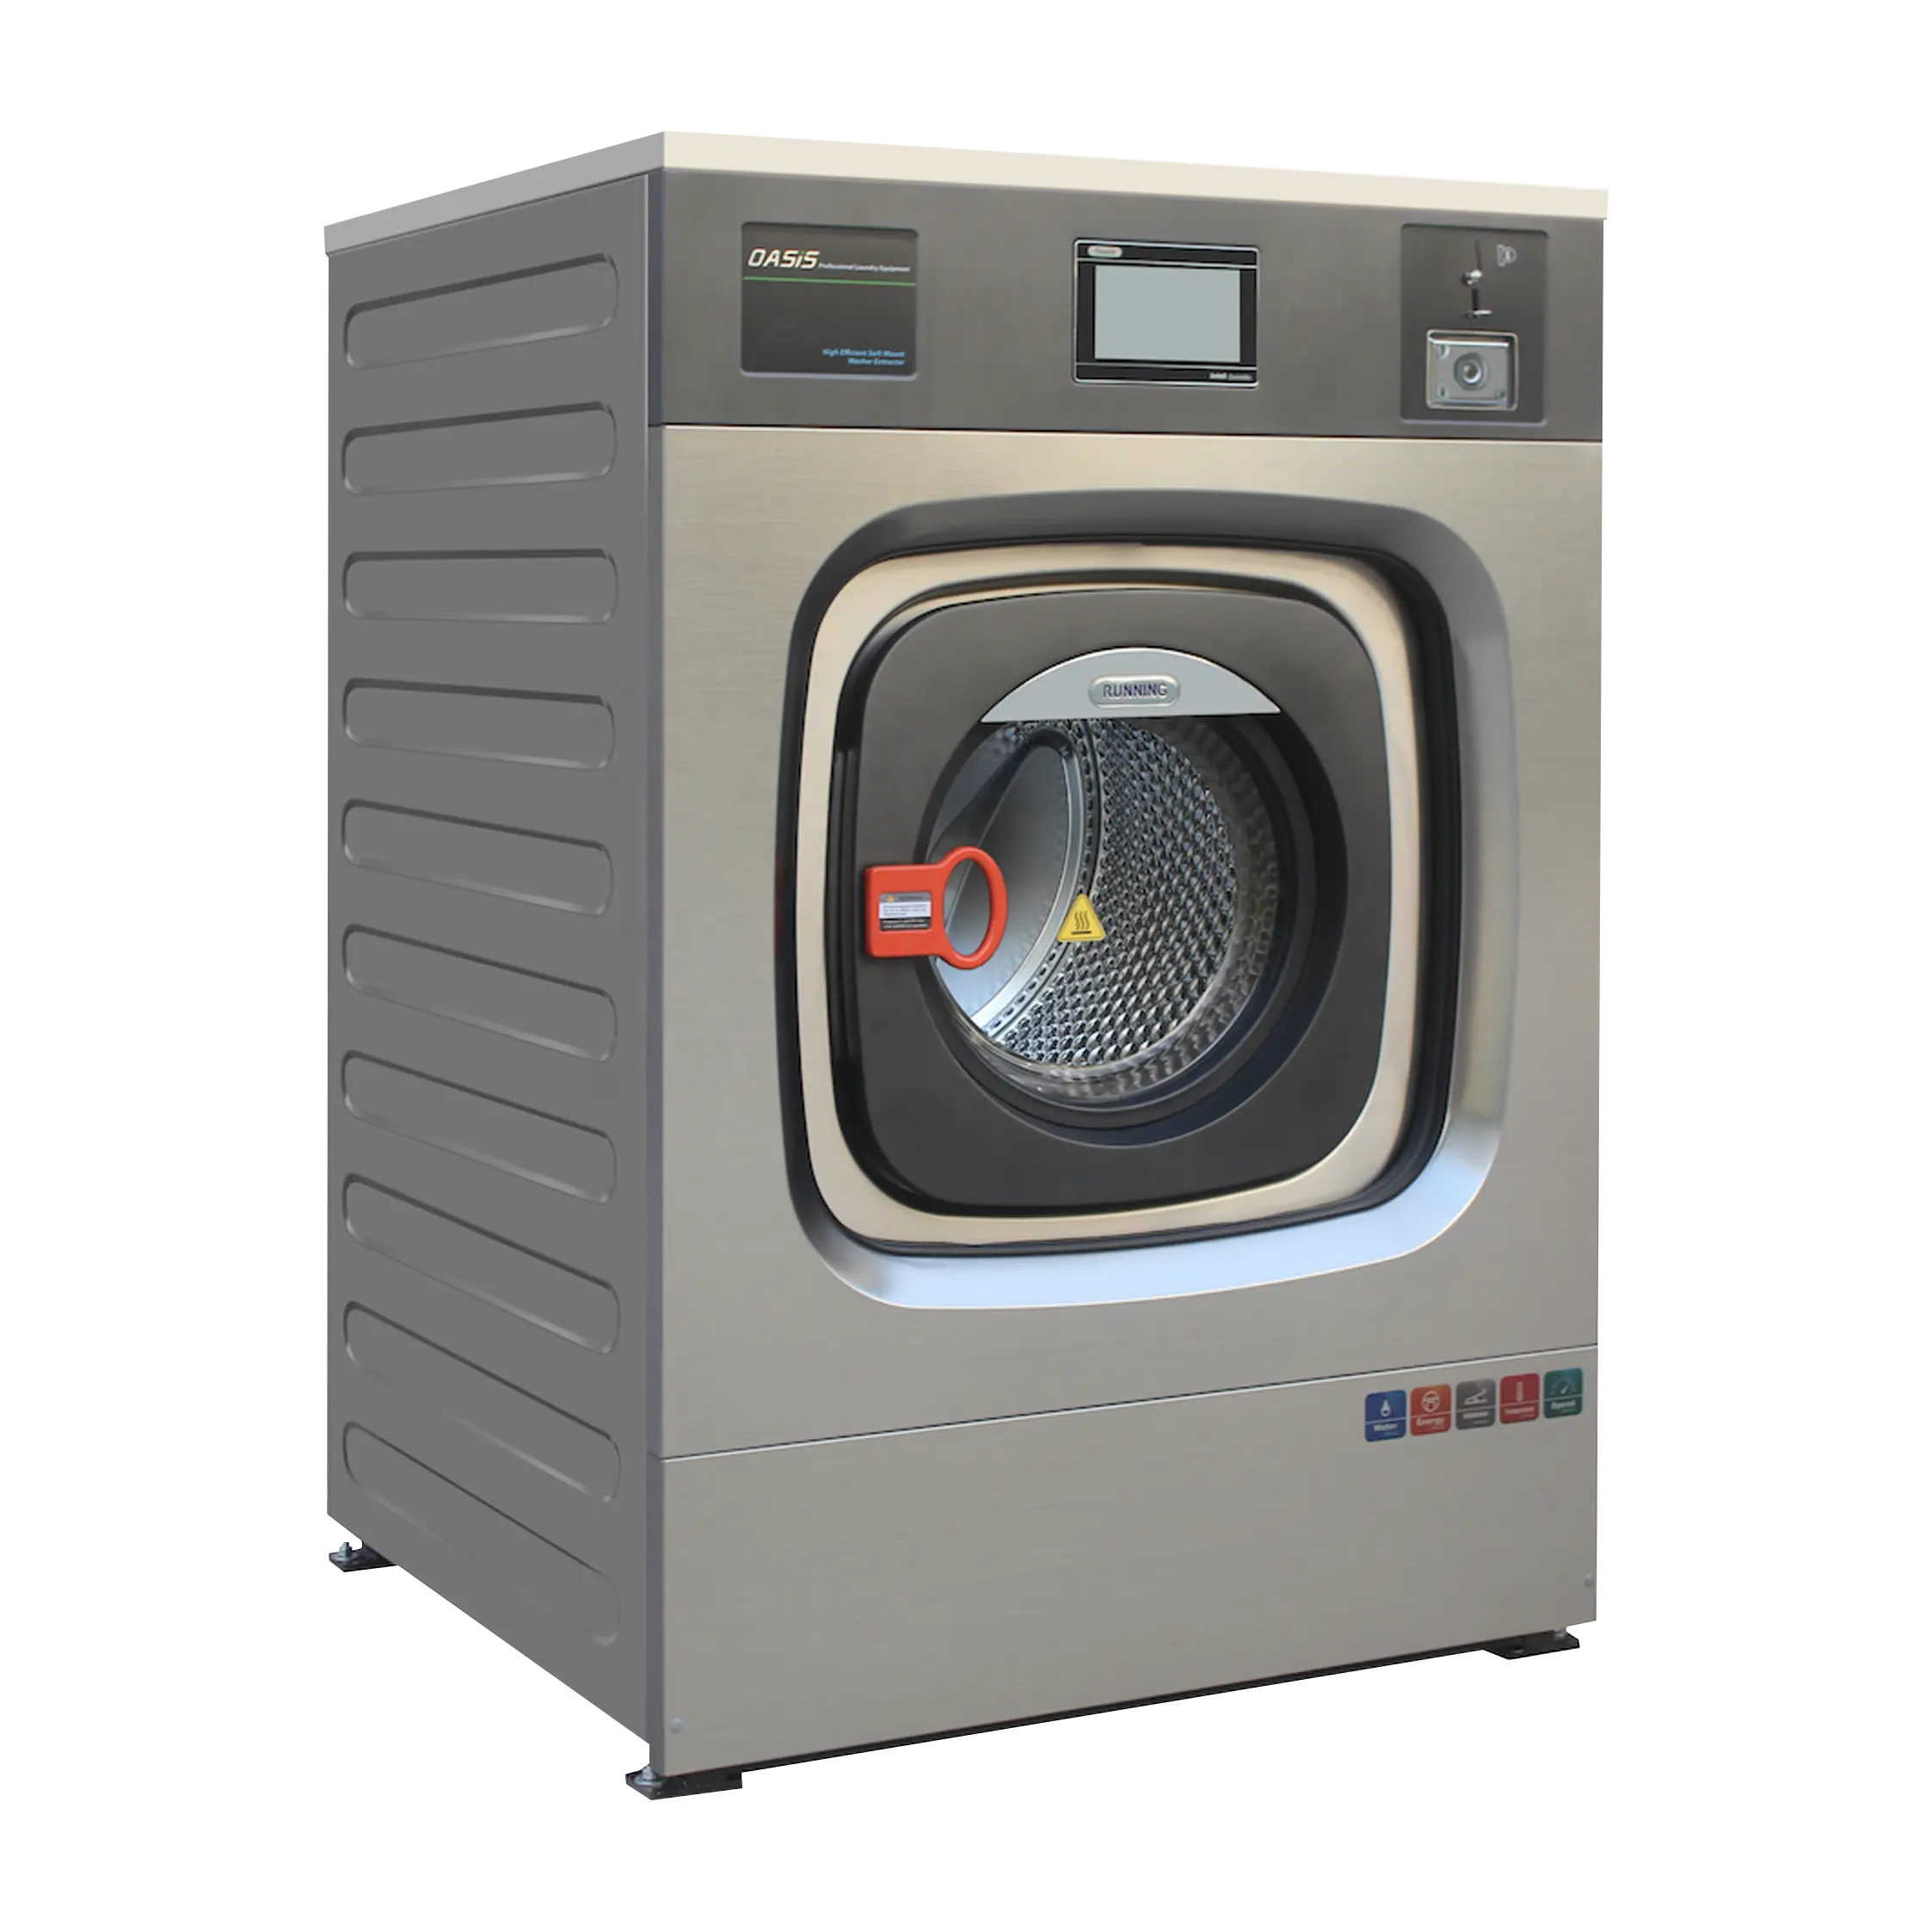 Laundromat menggunakan mesin cuci cucian 15Kg, Mesin cuci panas uap dudukan lembut sepenuhnya otomatis